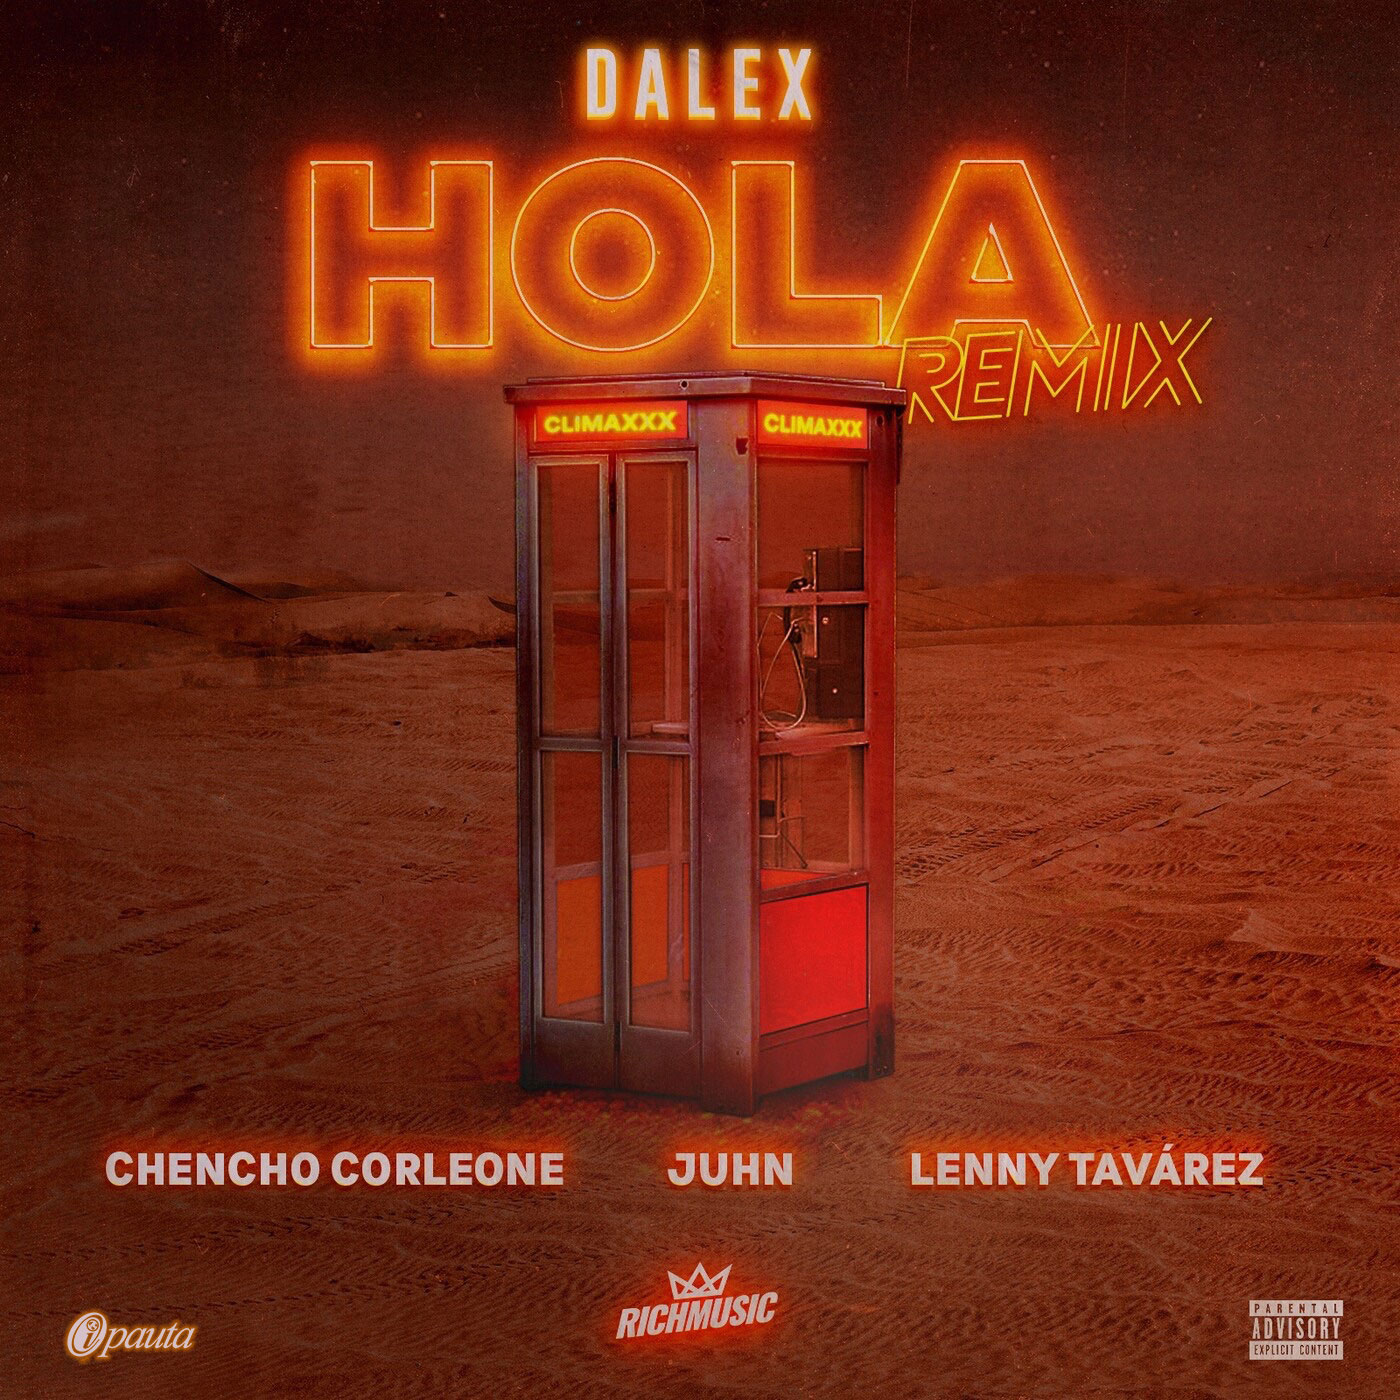 Dalex Hola remix